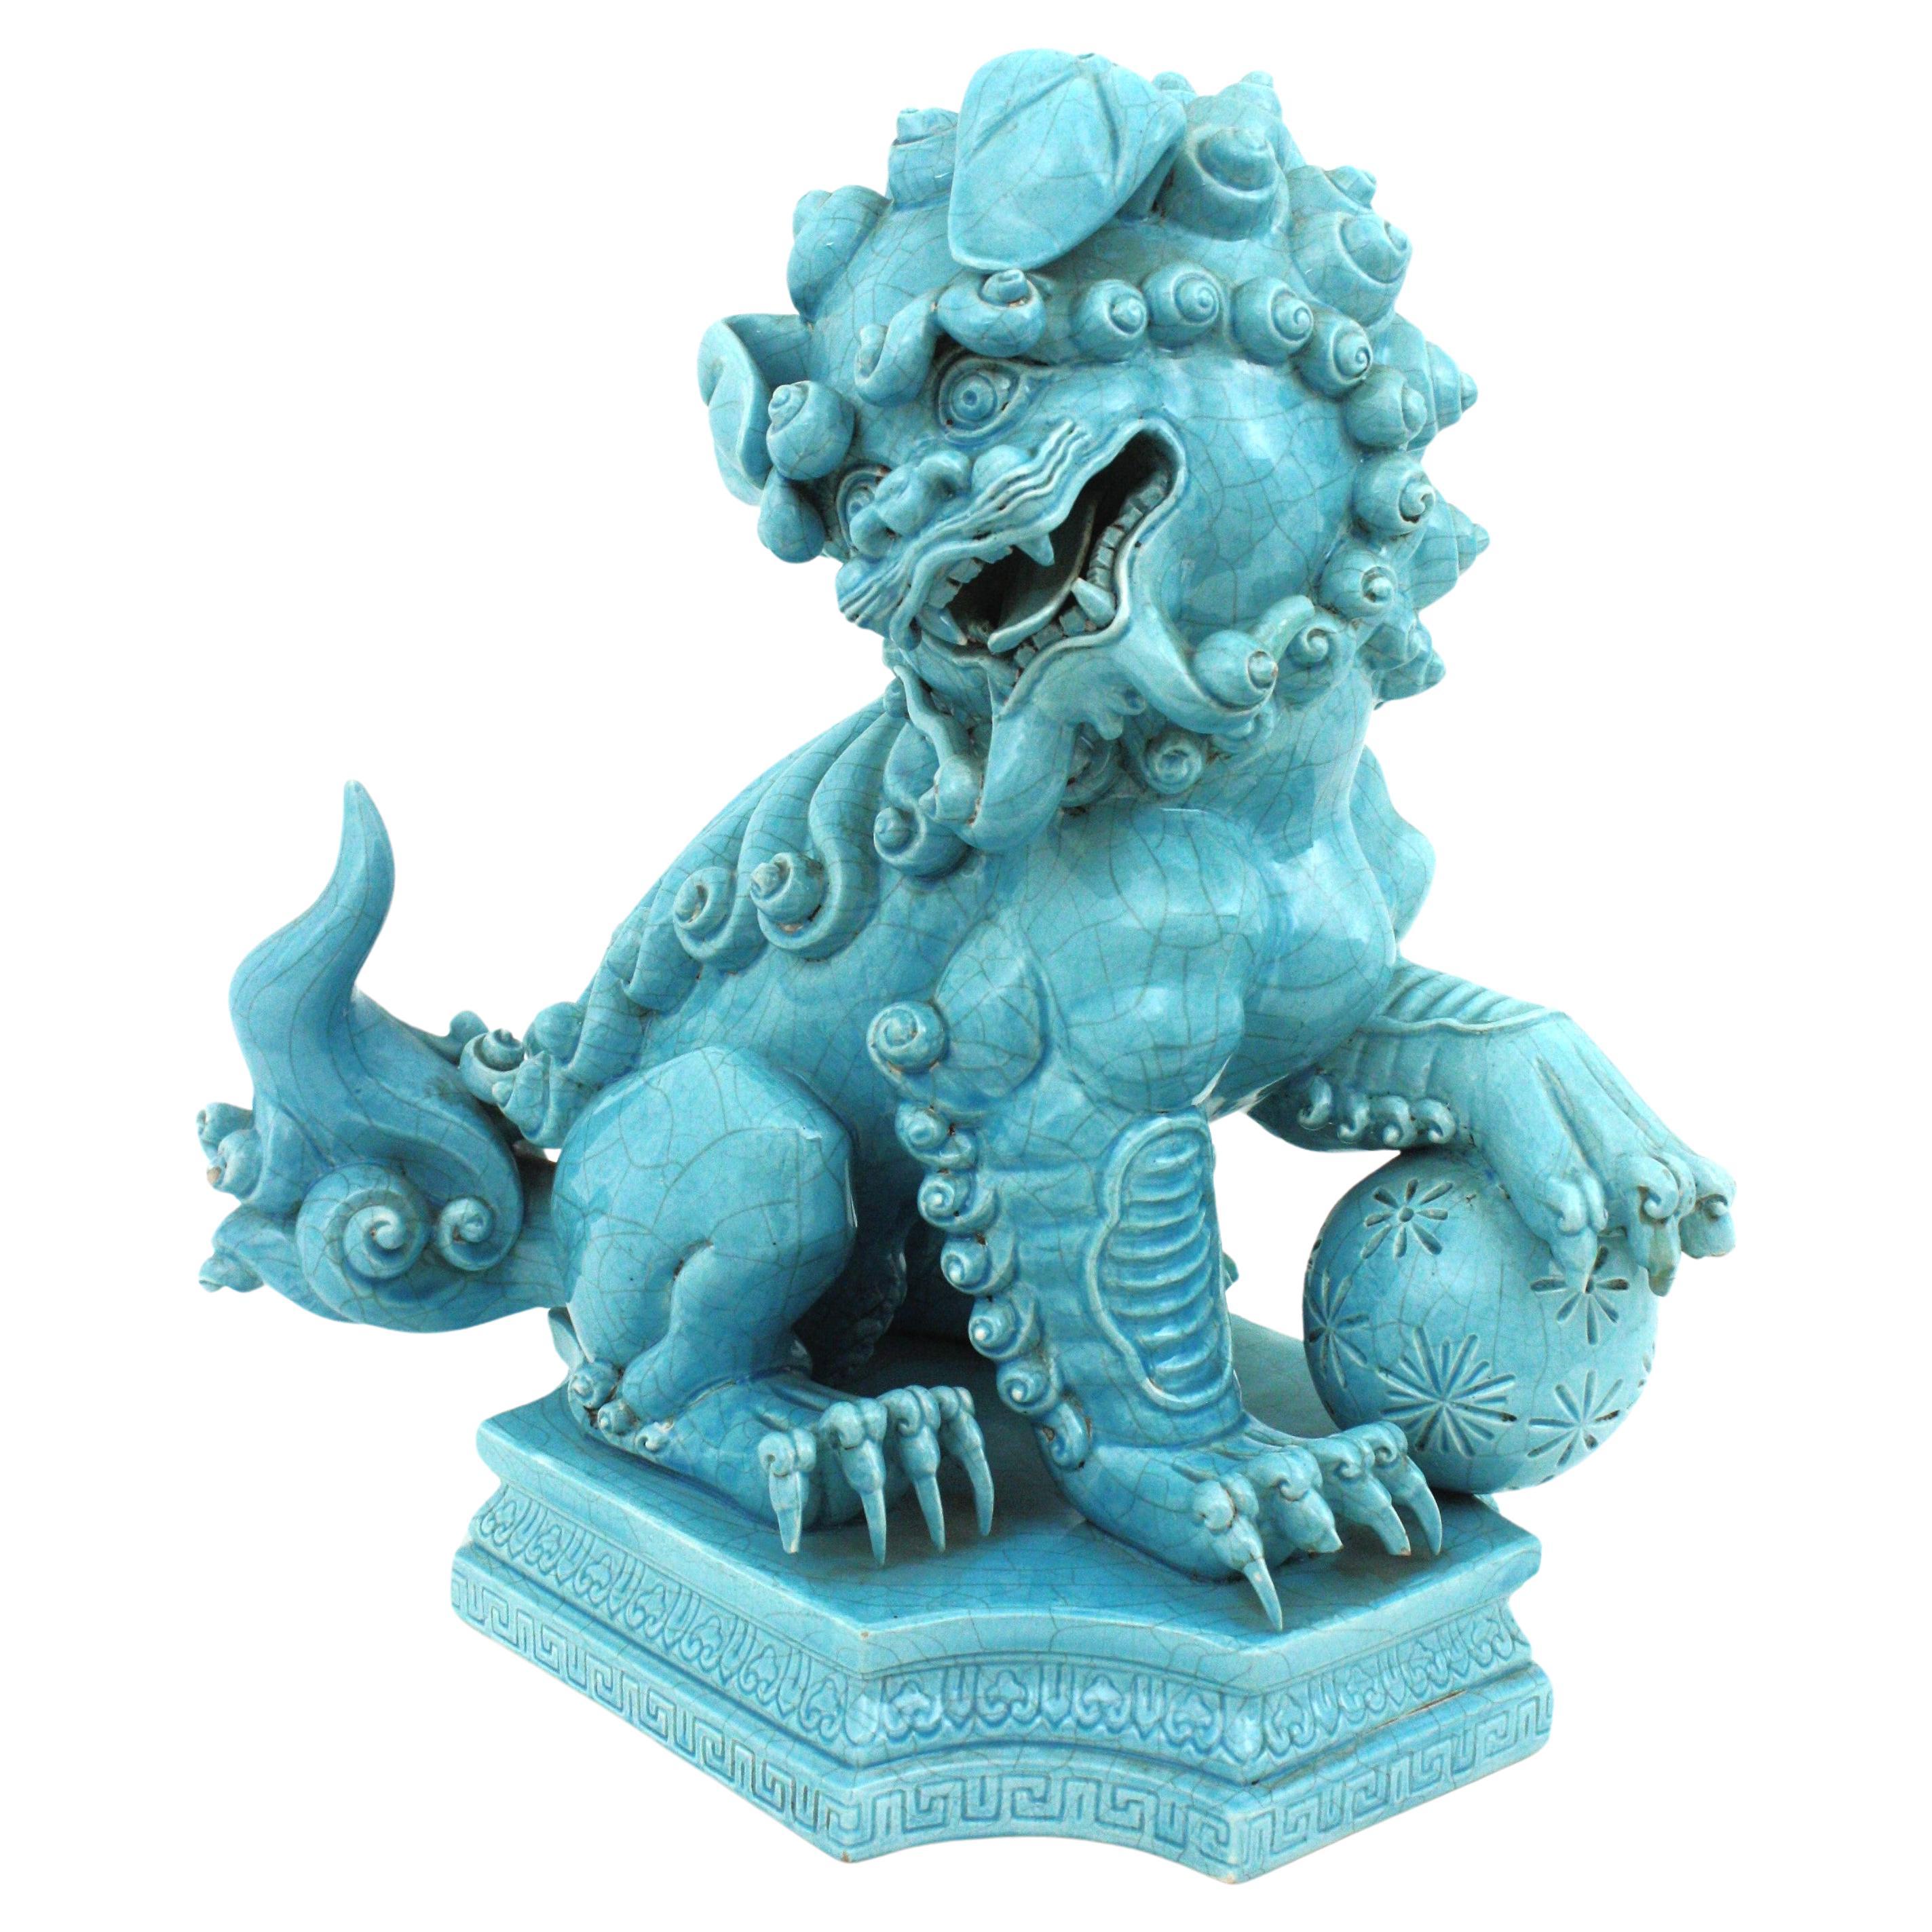 Großer männlicher Guardian Lion Foo Hund aus türkisblau glasiertem Porzellan
Algora Porzellane
Entworfen von 1920 bis 1949.
Dies ist ein männlicher Wächter Löwe Skulptur, ist zu erkennen, wie es ruht seine Pfote auf den Ball.
Seit Jahrtausenden sind